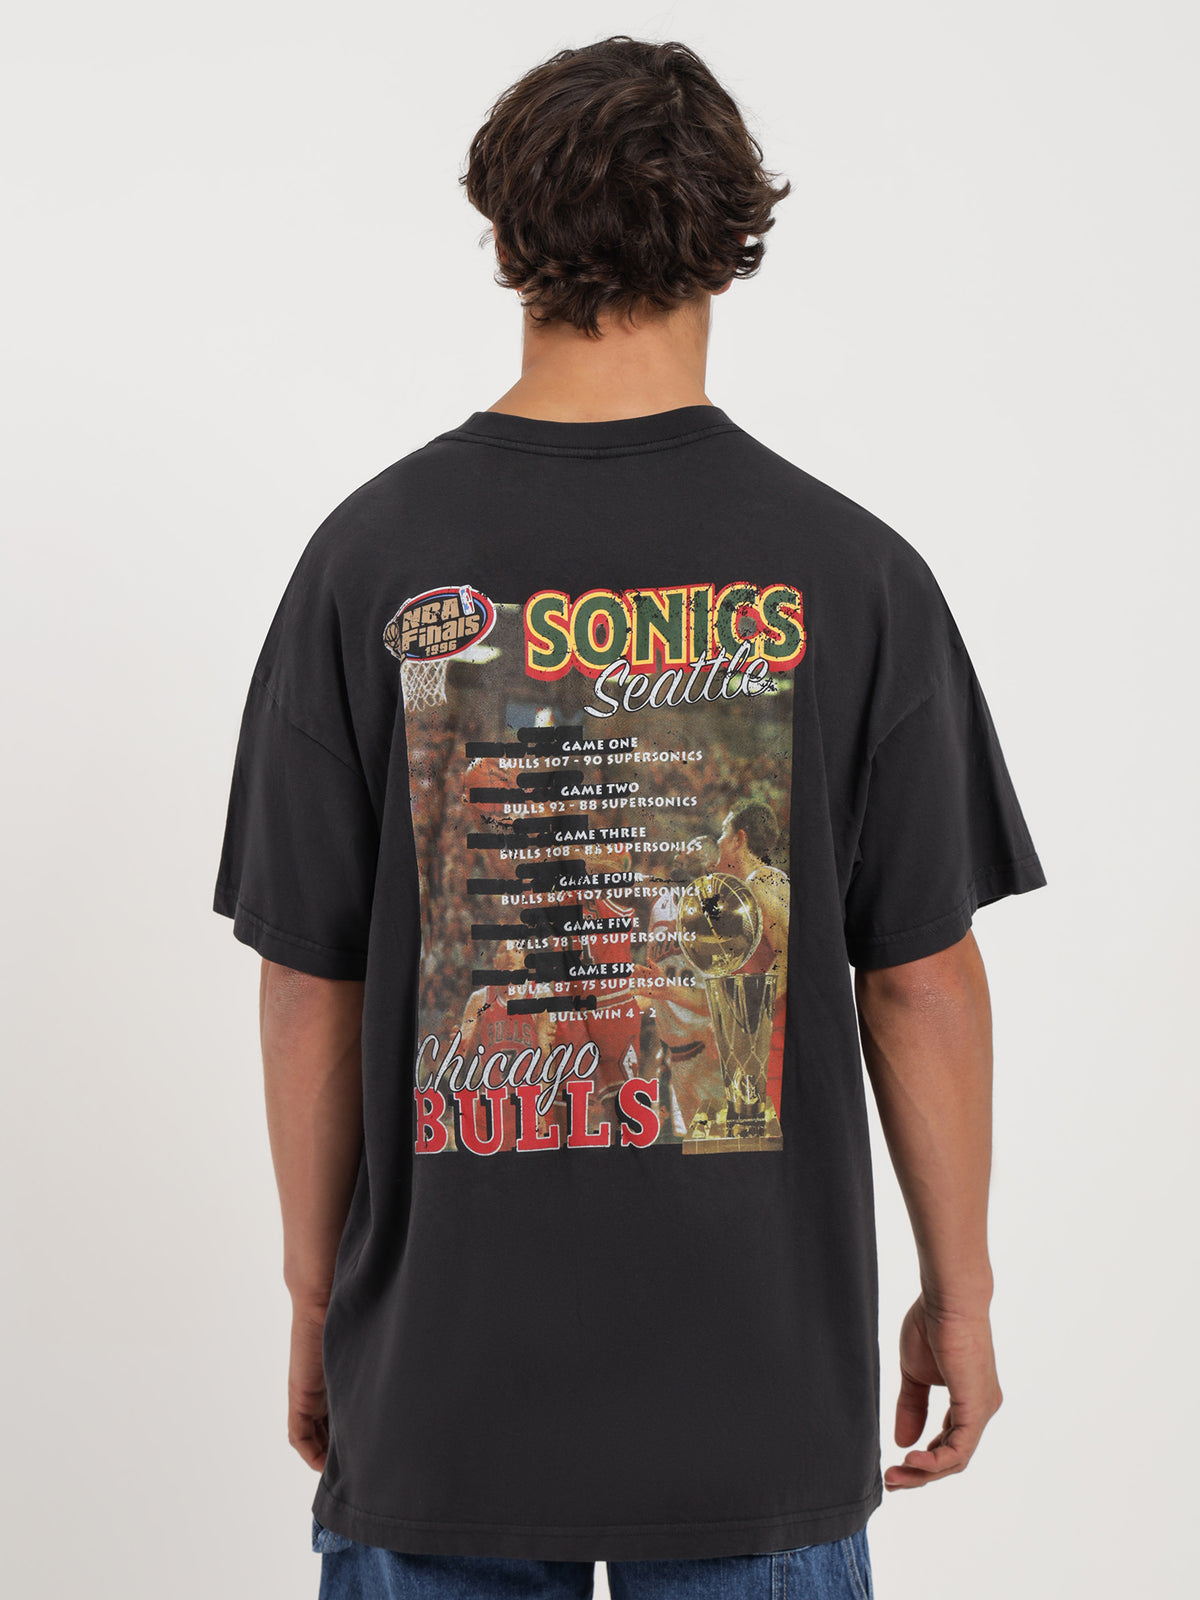 1996 Chicago Bulls vs Seattle Sonics T-Shirt in Black